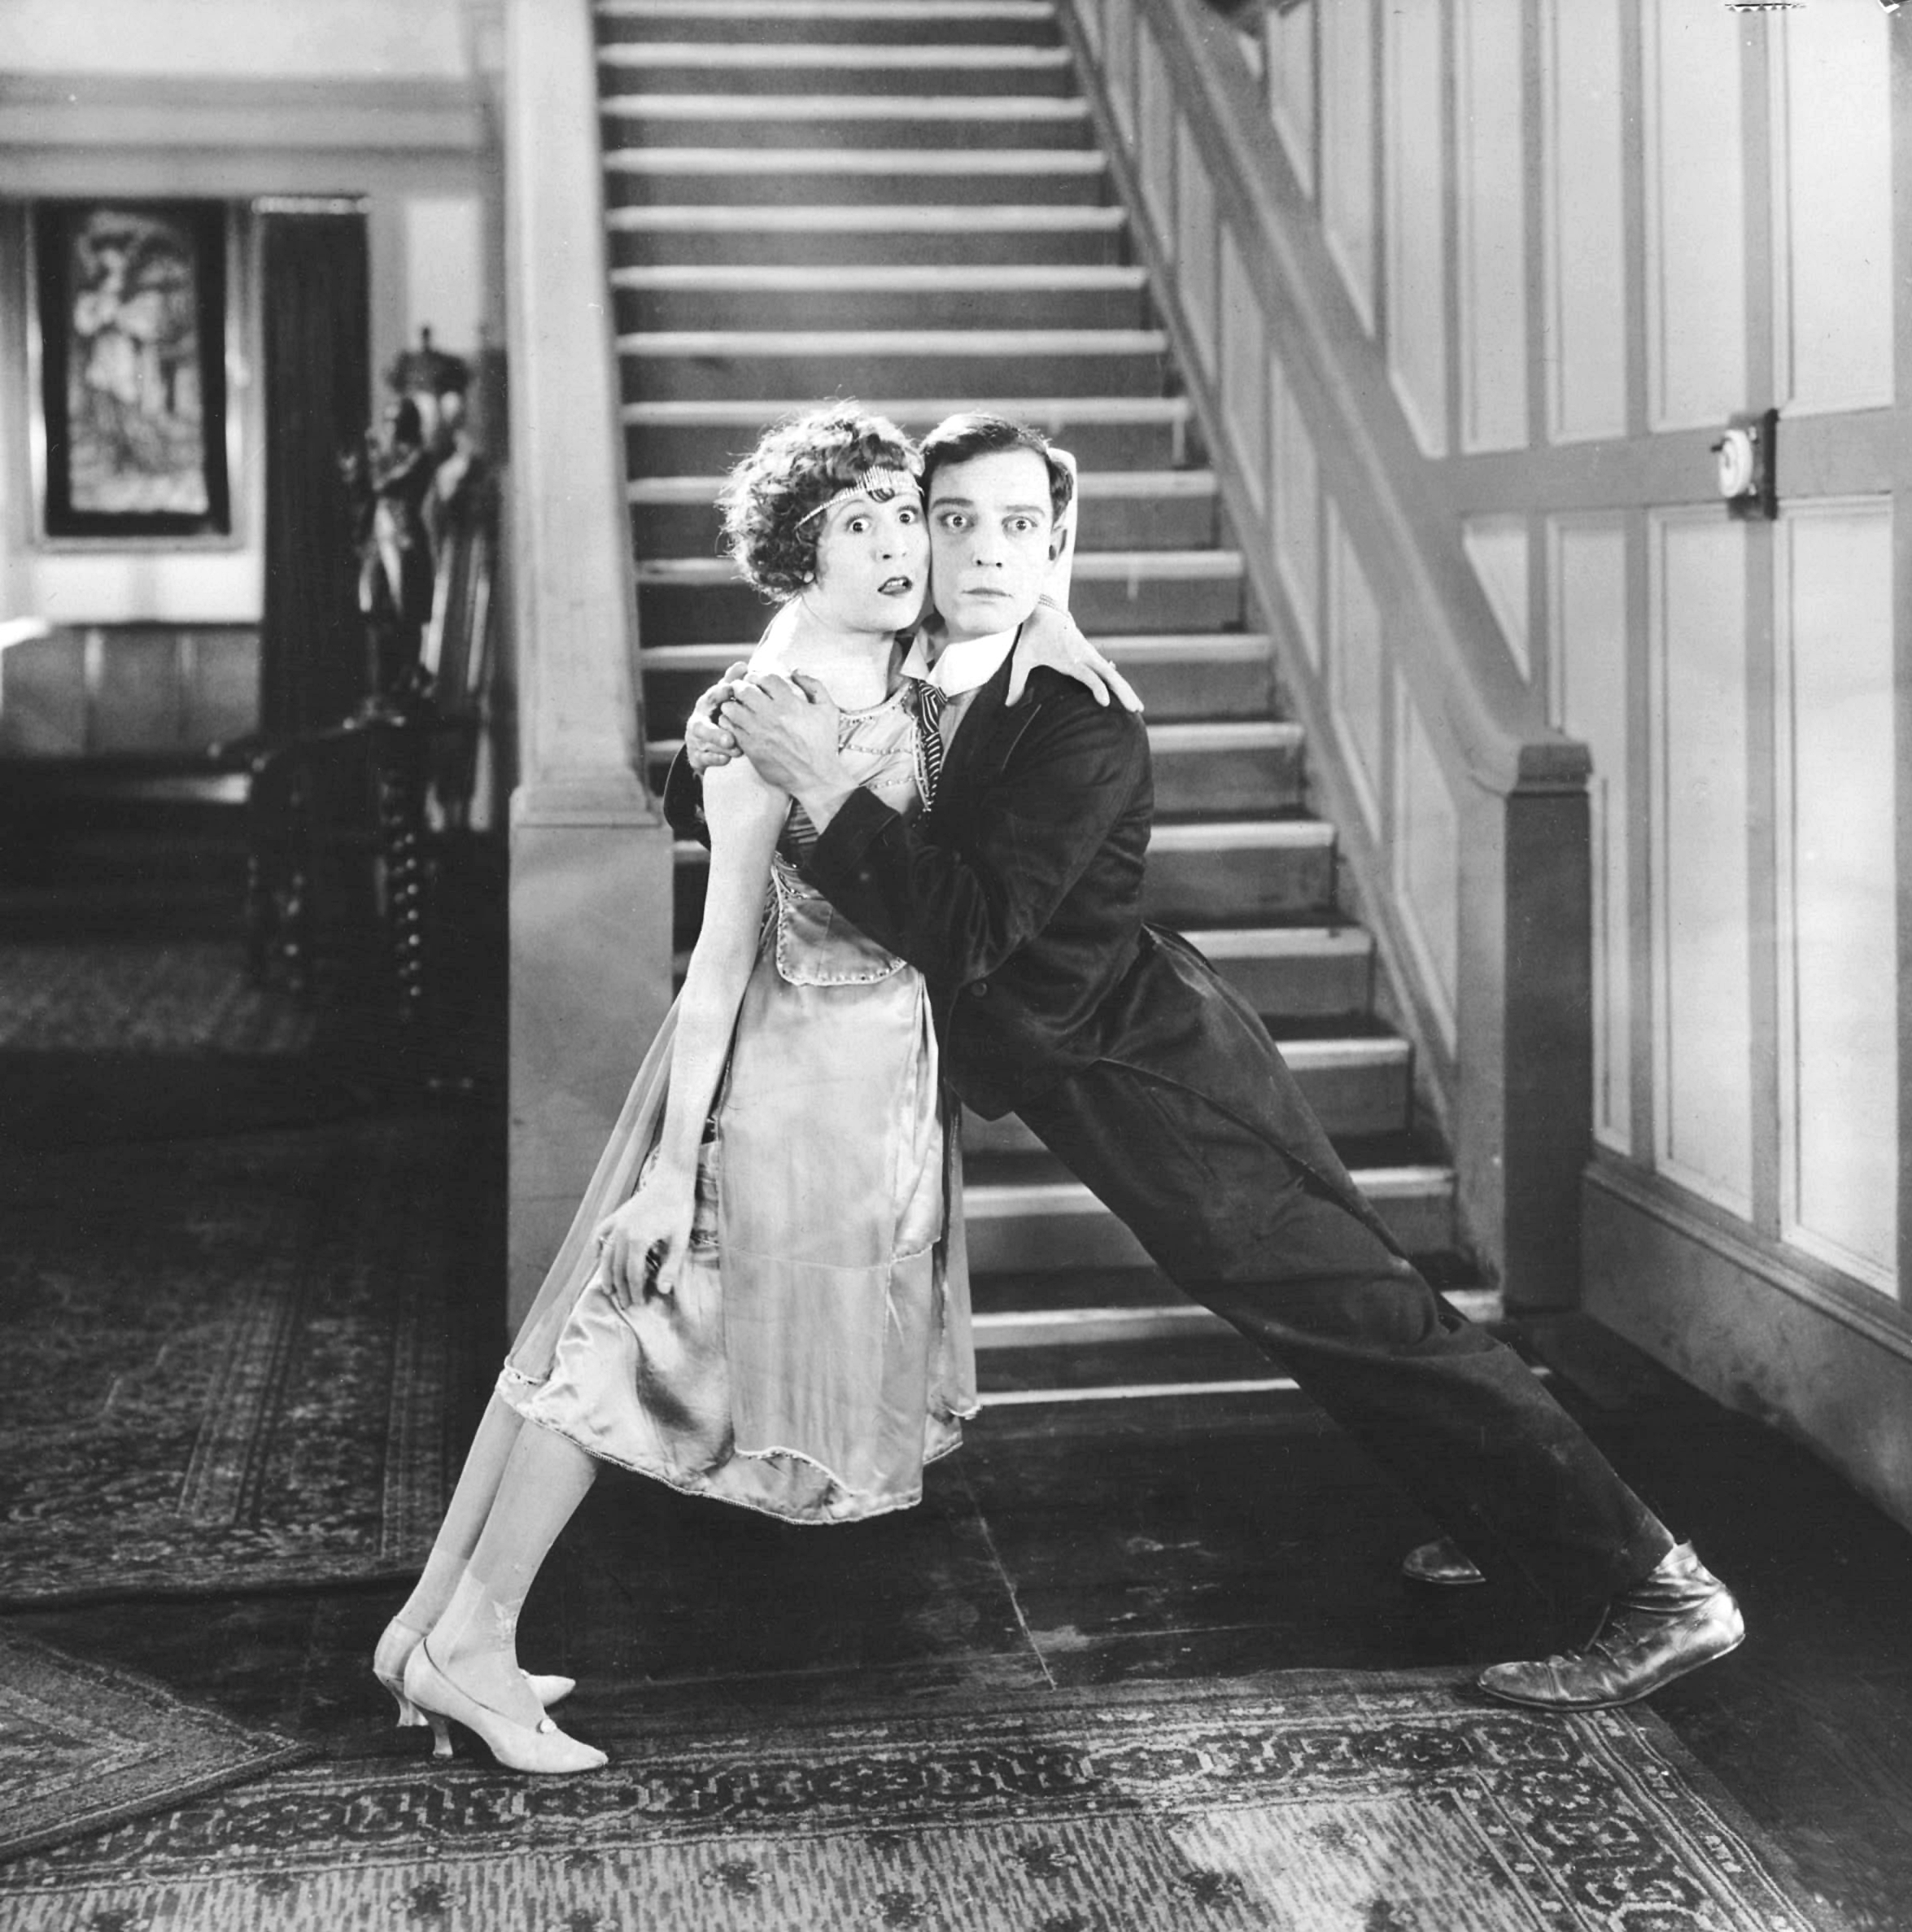 Les solistes de Provence mettent en musique un film de Buster Keaton